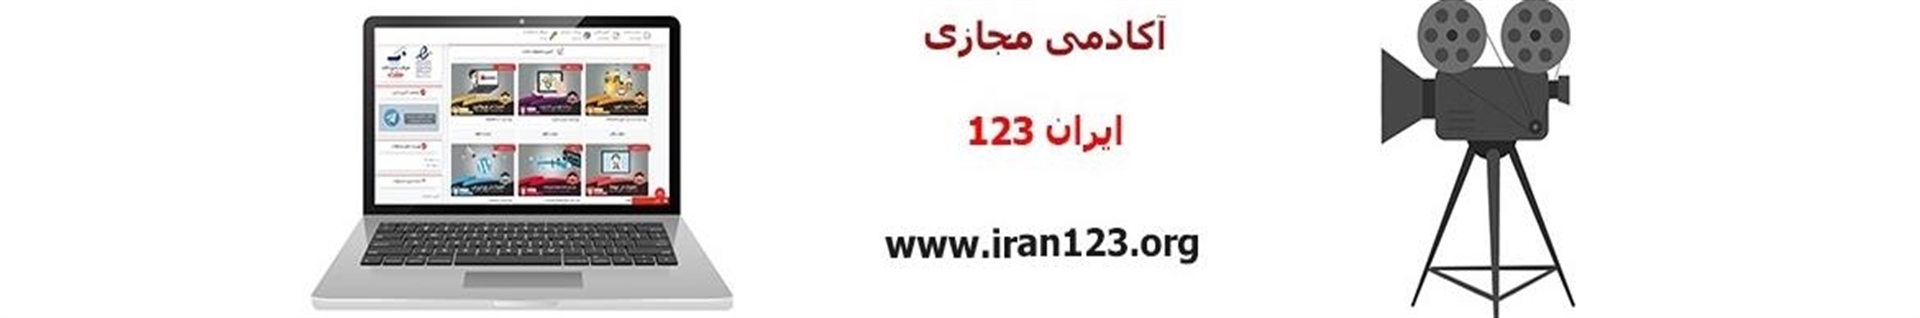 آکادمی ایران 123